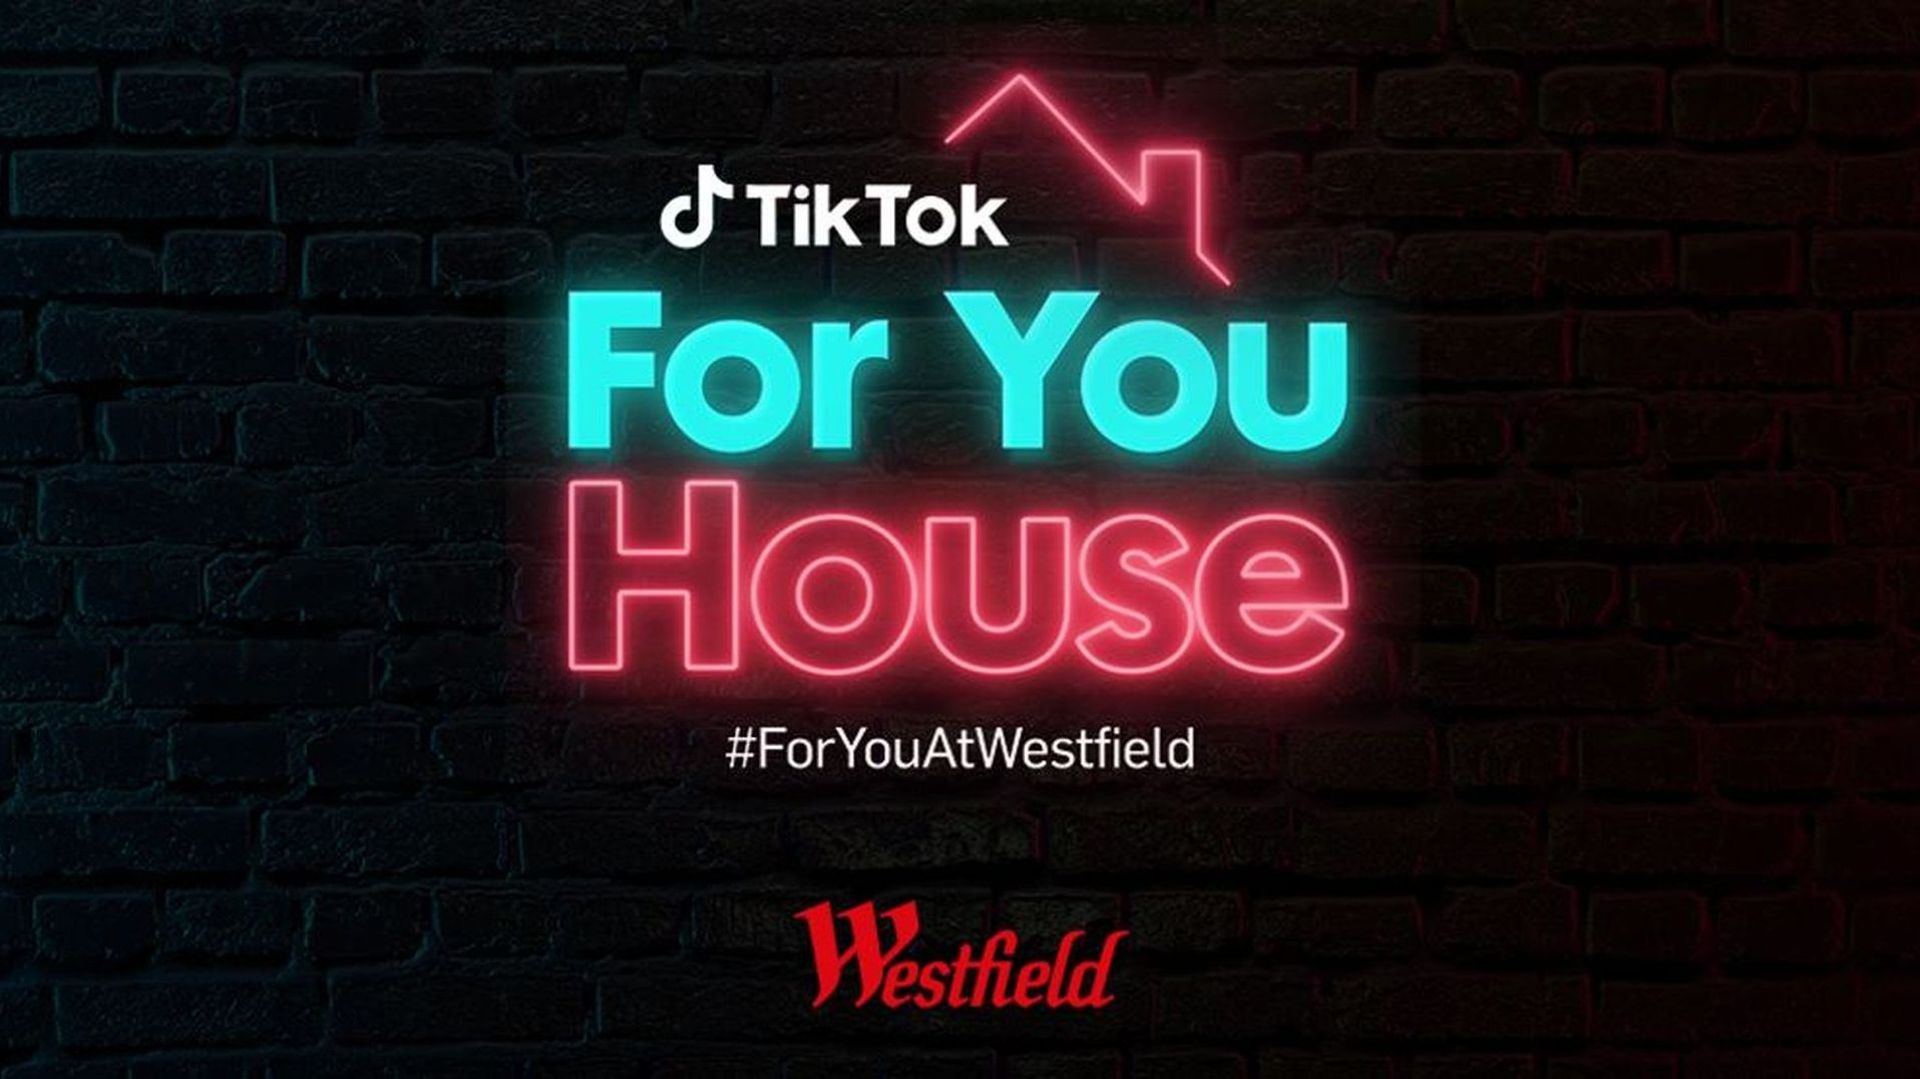 Le pop-up store "TikTok For You House" sera ouvert pendant presque trois semaines à Westfield London.